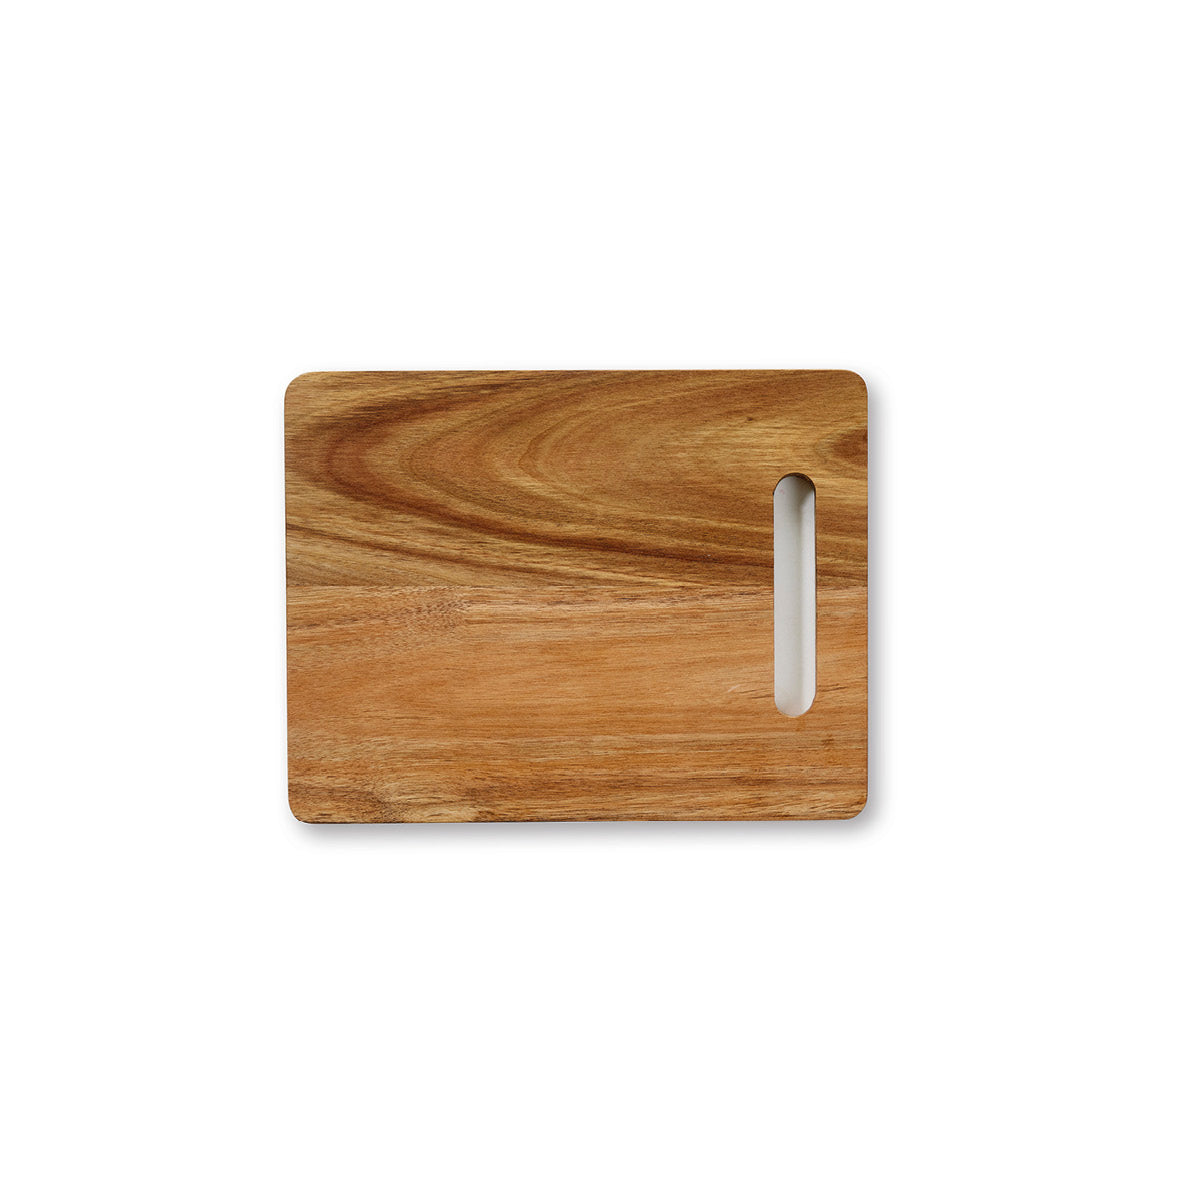 Planche à découper rectangulaire en bois d'acacia avec poignée intégrée - VipShopBoutic